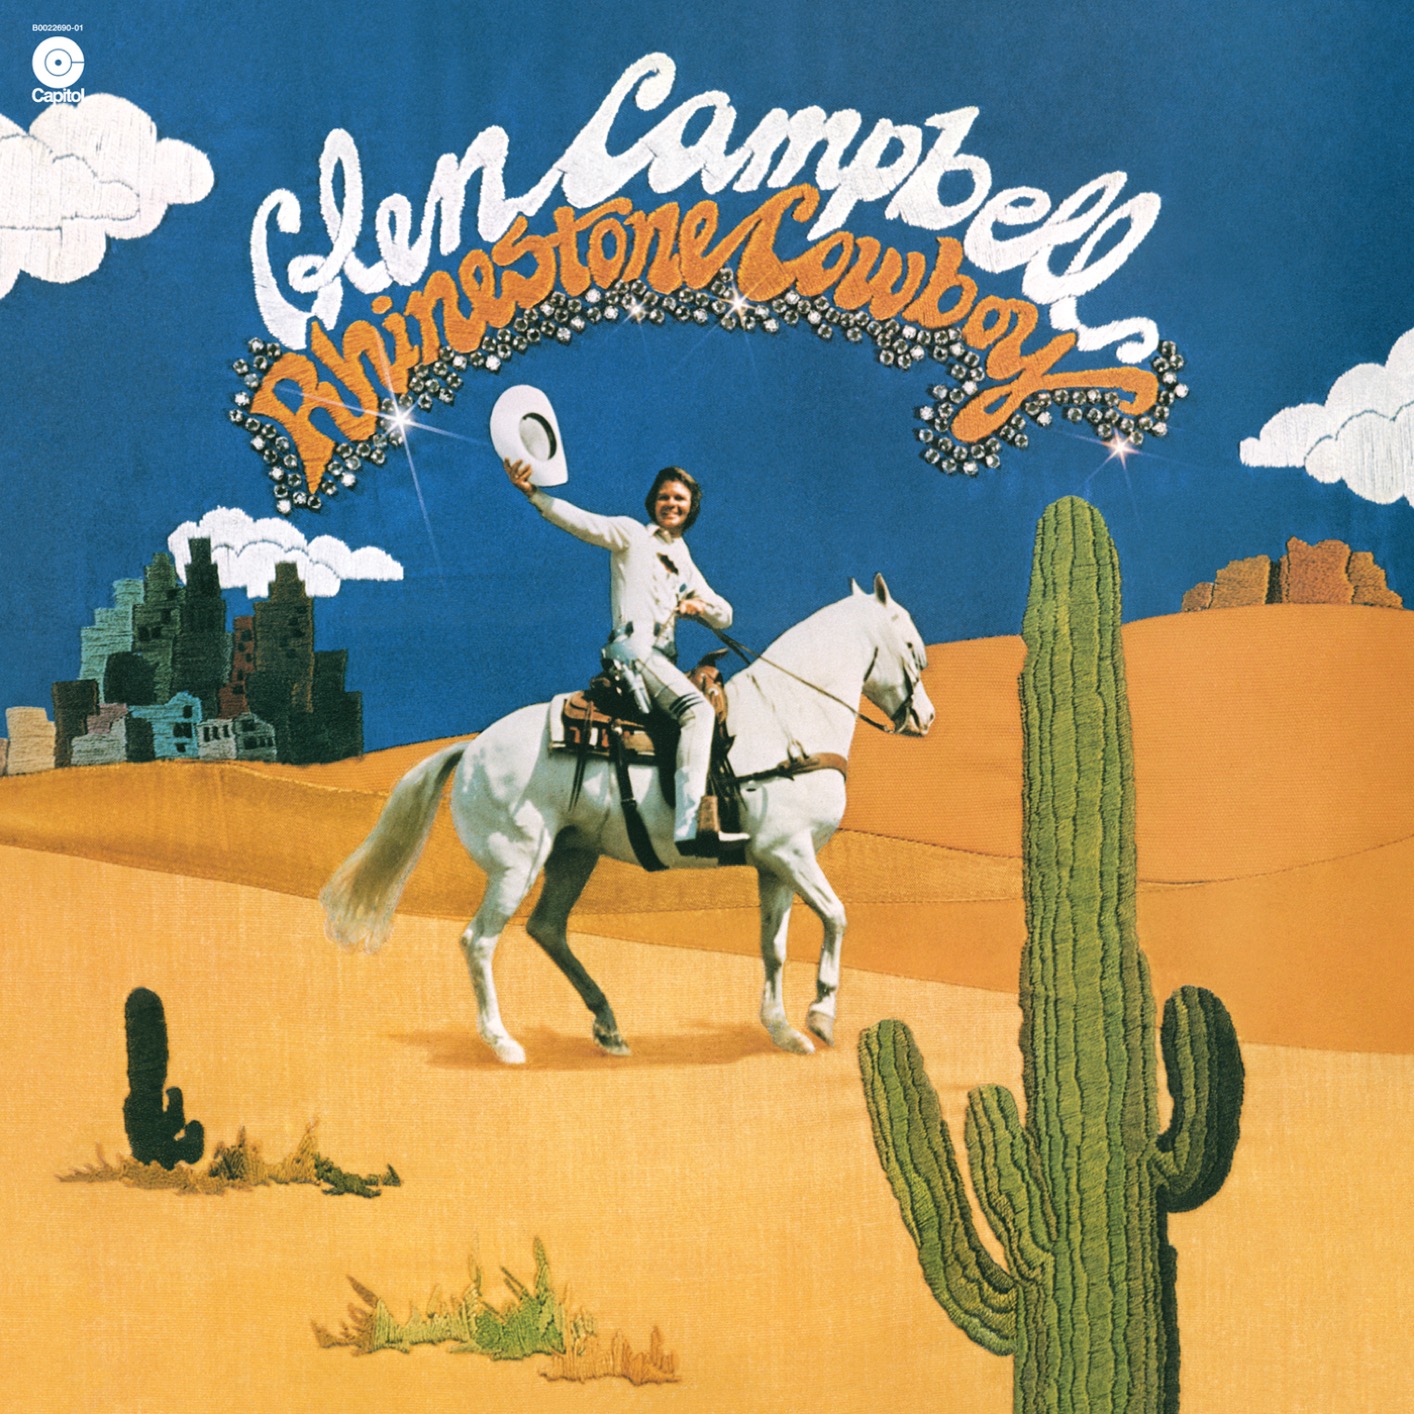 Glen Campbell - Rhinestone Cowboy (1975/2019) [FLAC 24bit/192kHz]